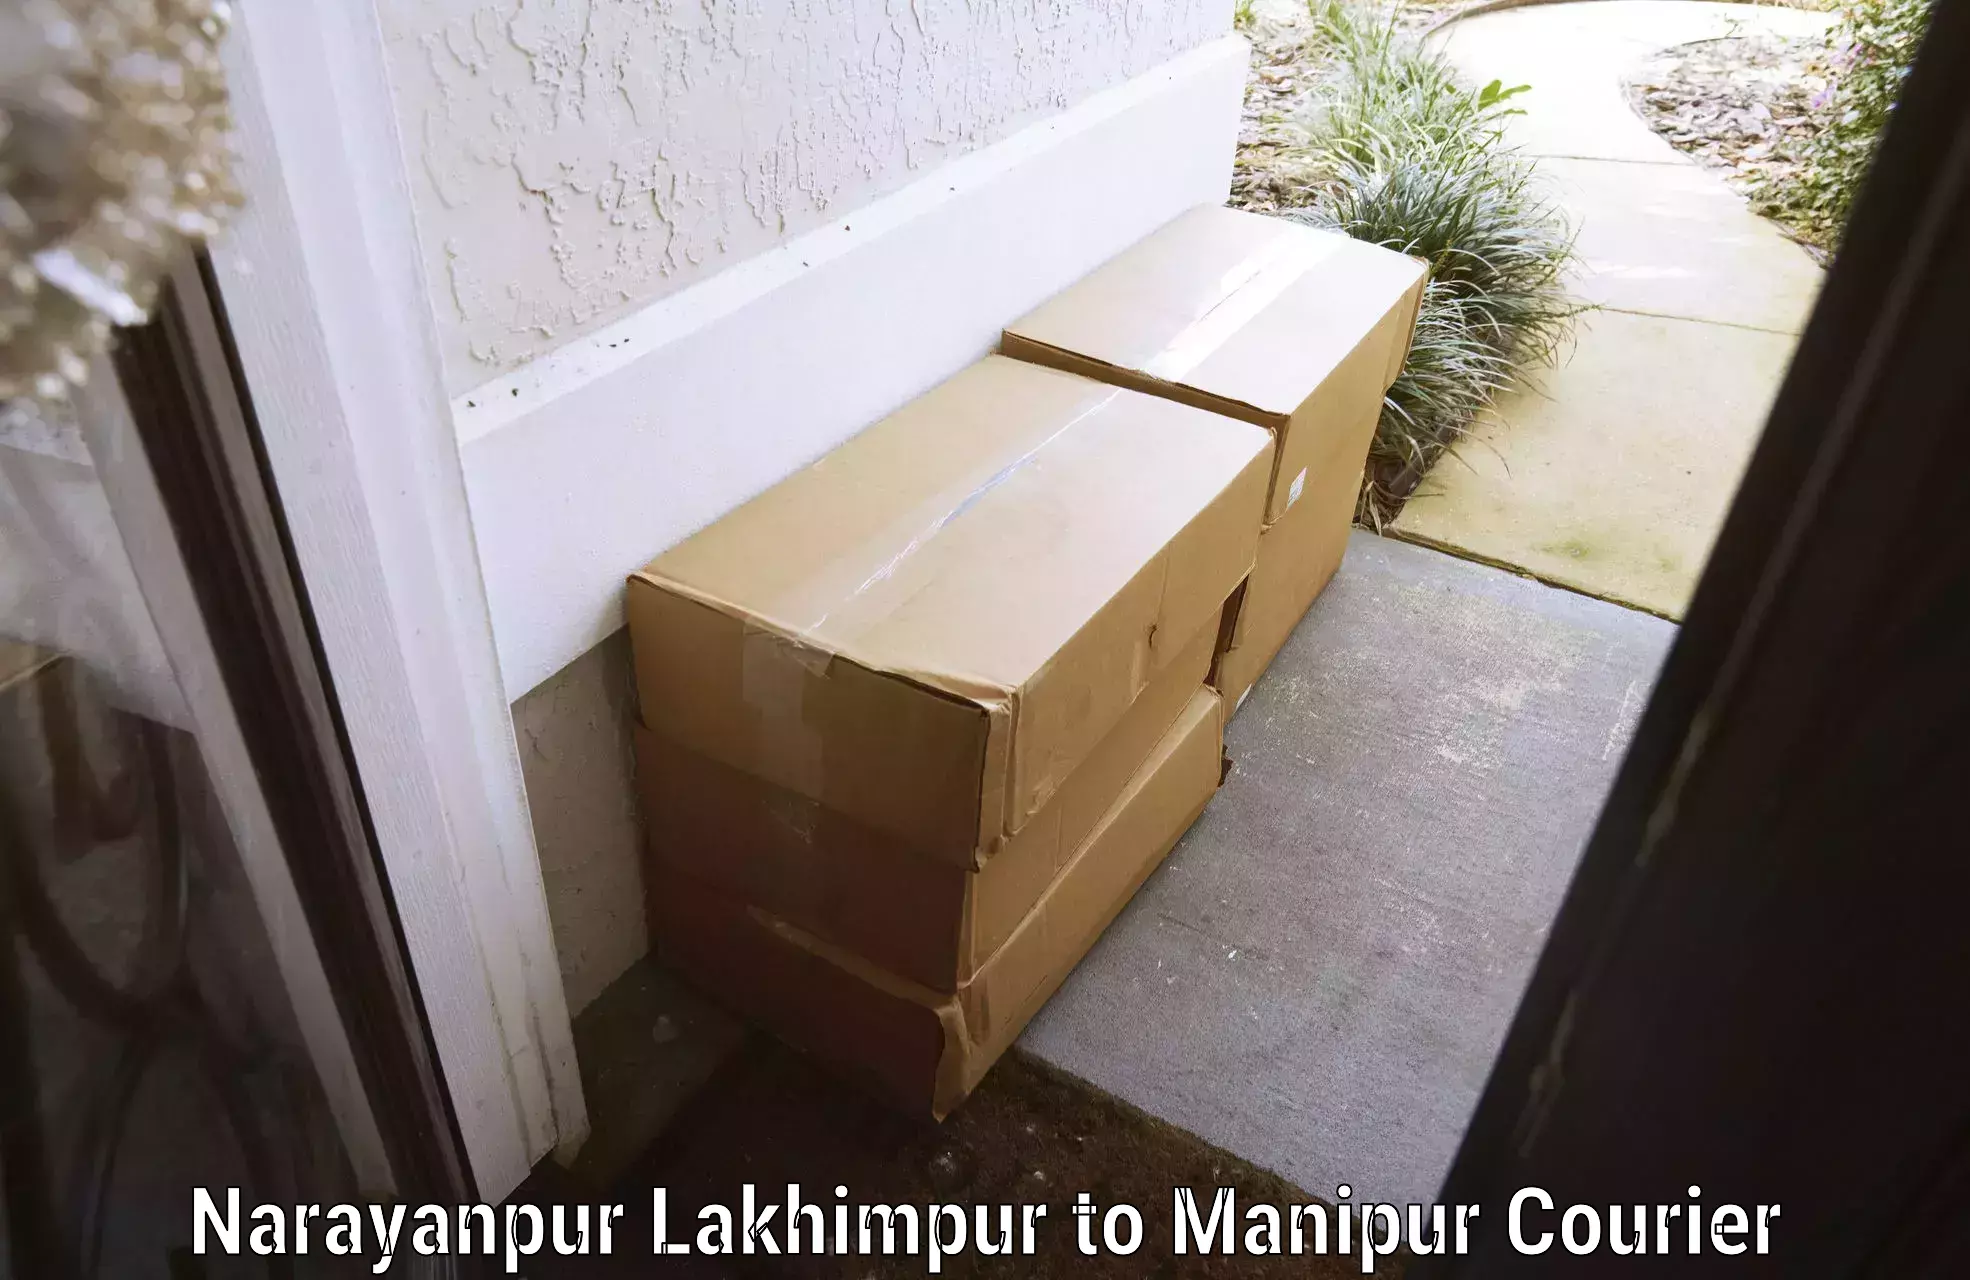 Baggage transport services Narayanpur Lakhimpur to NIT Manipur